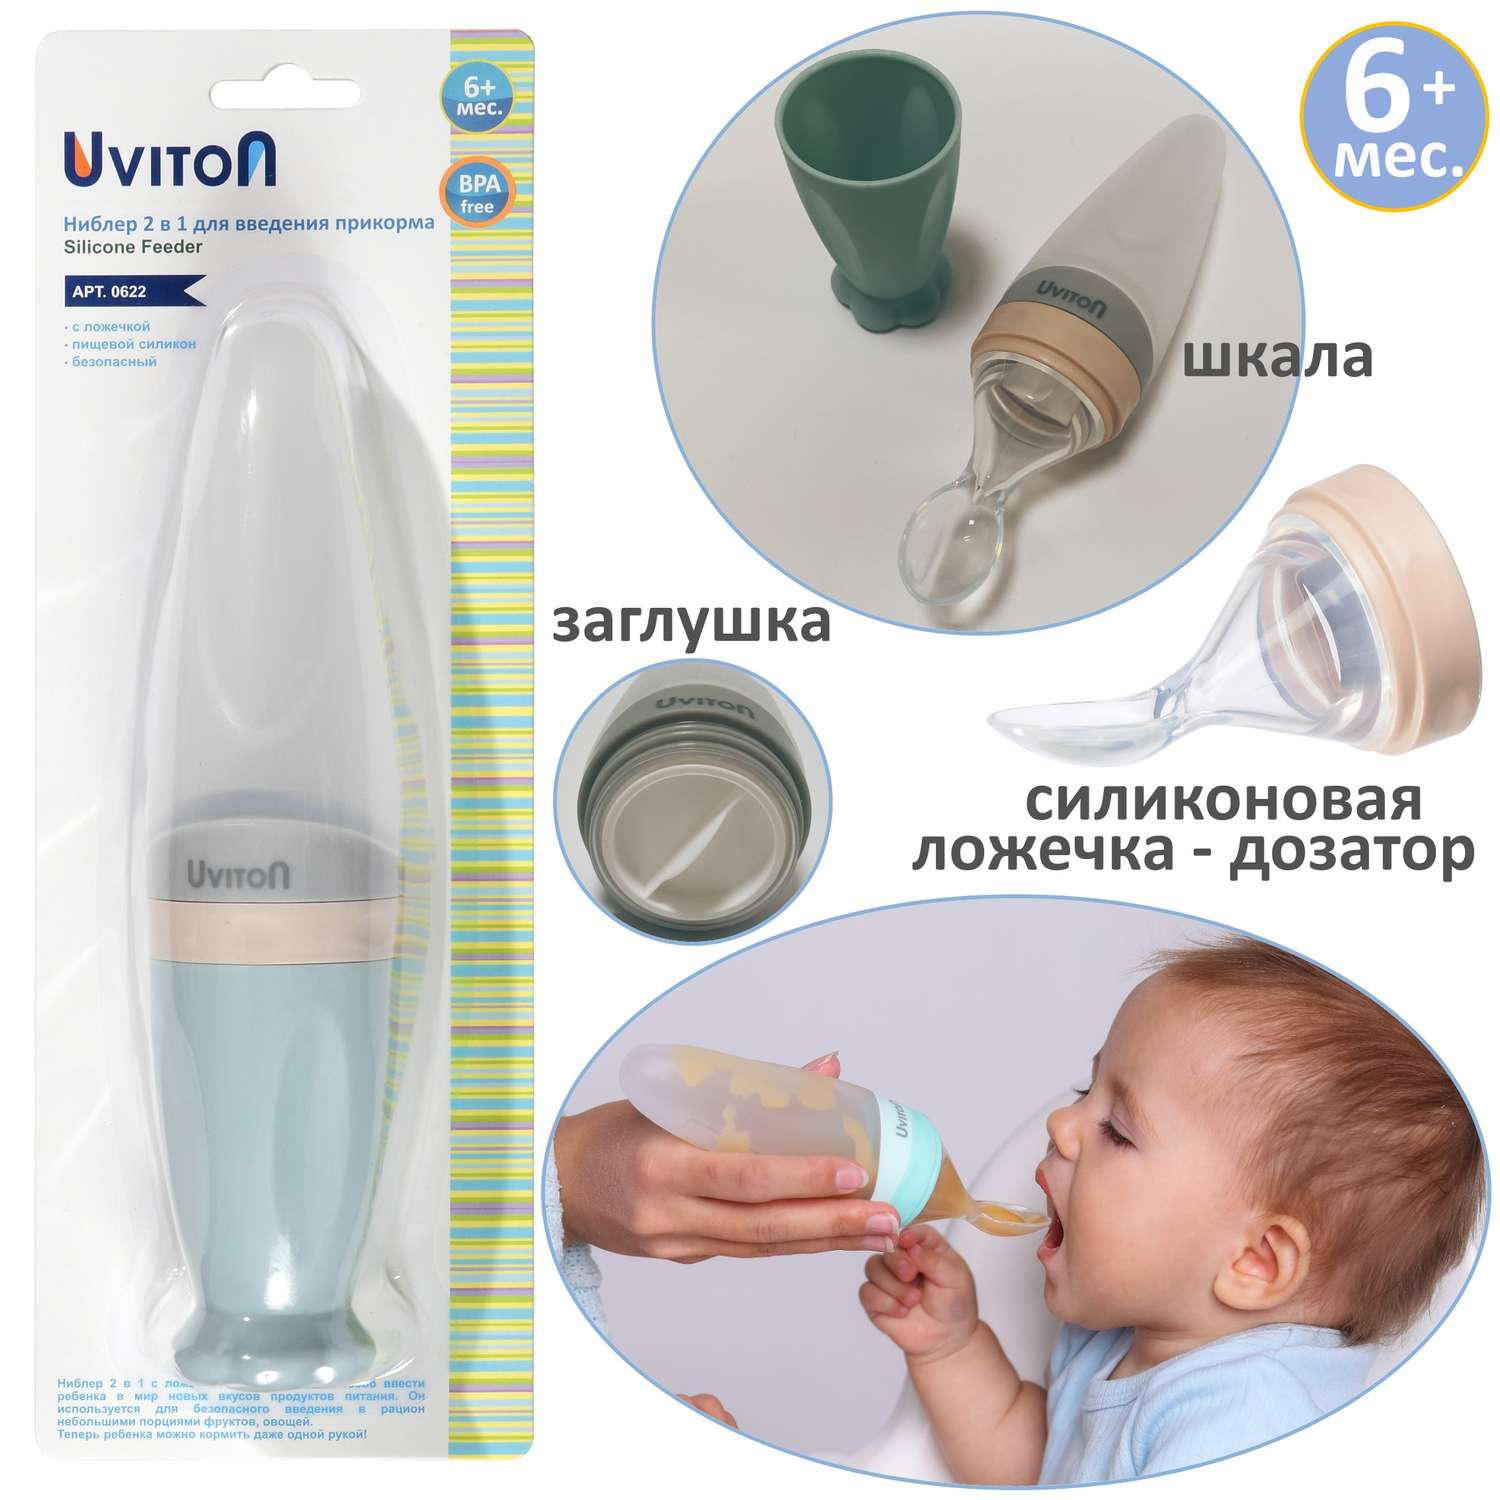 Дозатор бутылочка Uviton с ложечкой для введения прикорма - фото 1